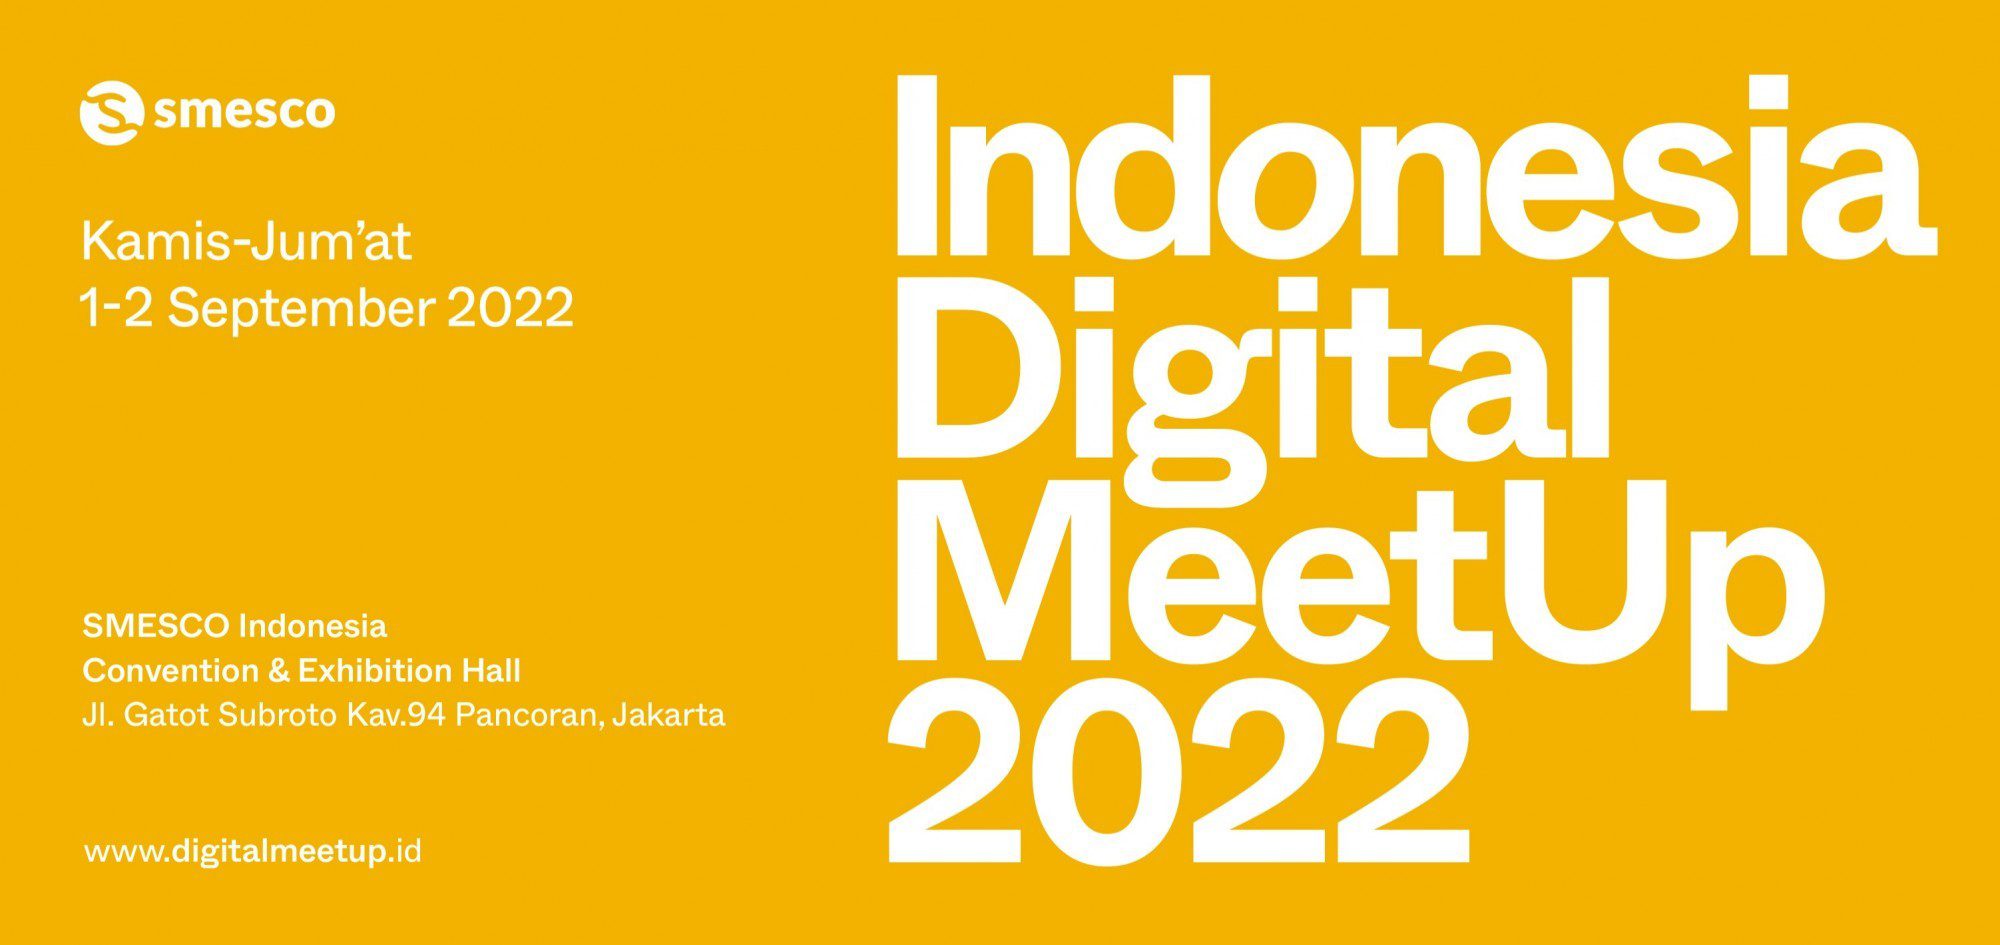 Sobat KH, Datang Yuk ke Acara Digital Meetup 2022 di Smesco Indonesia. Ada Harga Promo dari Kontrak Hukum Lho!